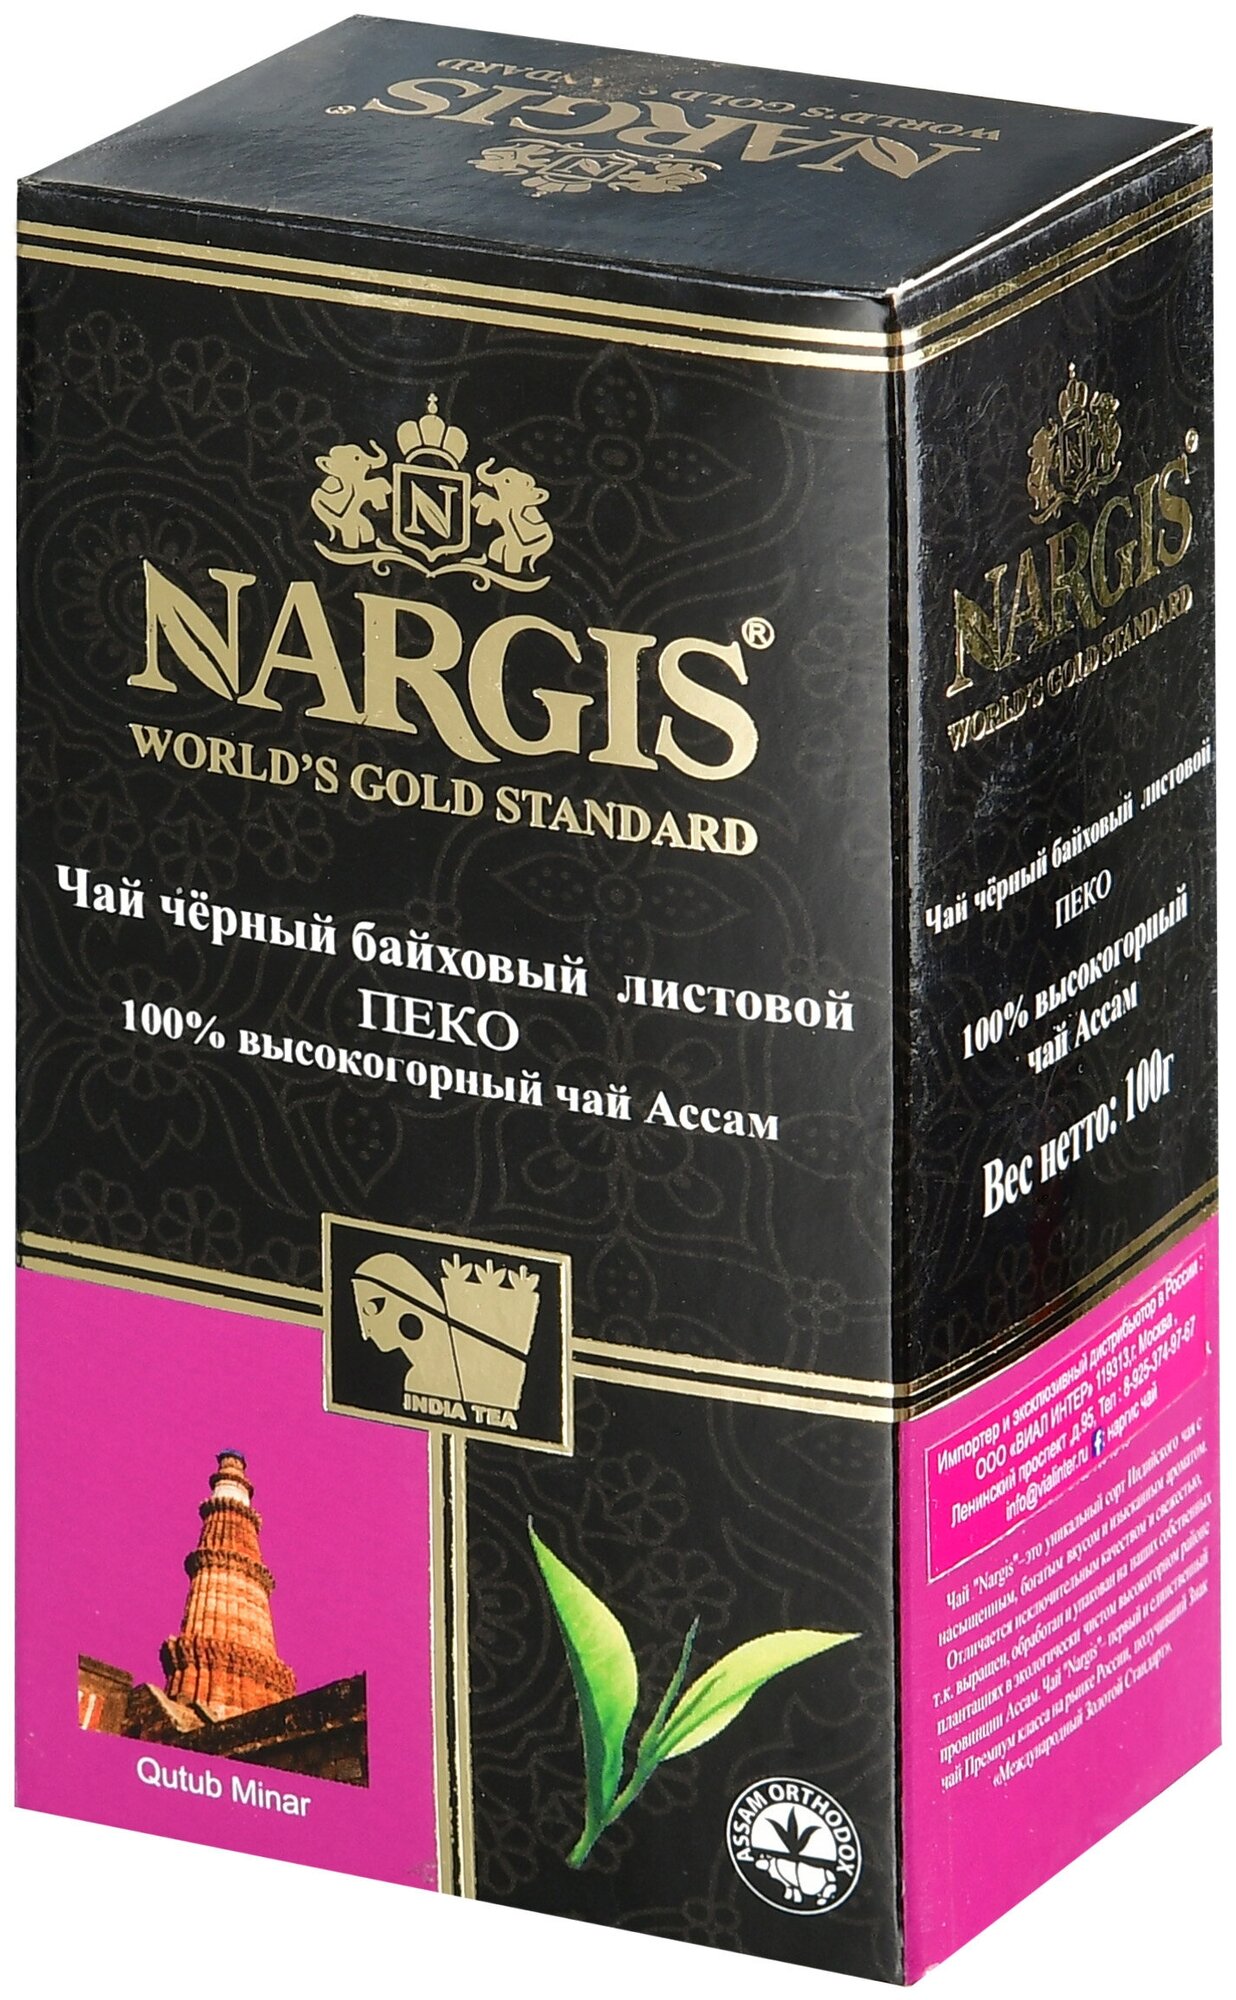 Чай черный байховый листовой Наргис Ассам Пеко 100г высокогорный - фотография № 1